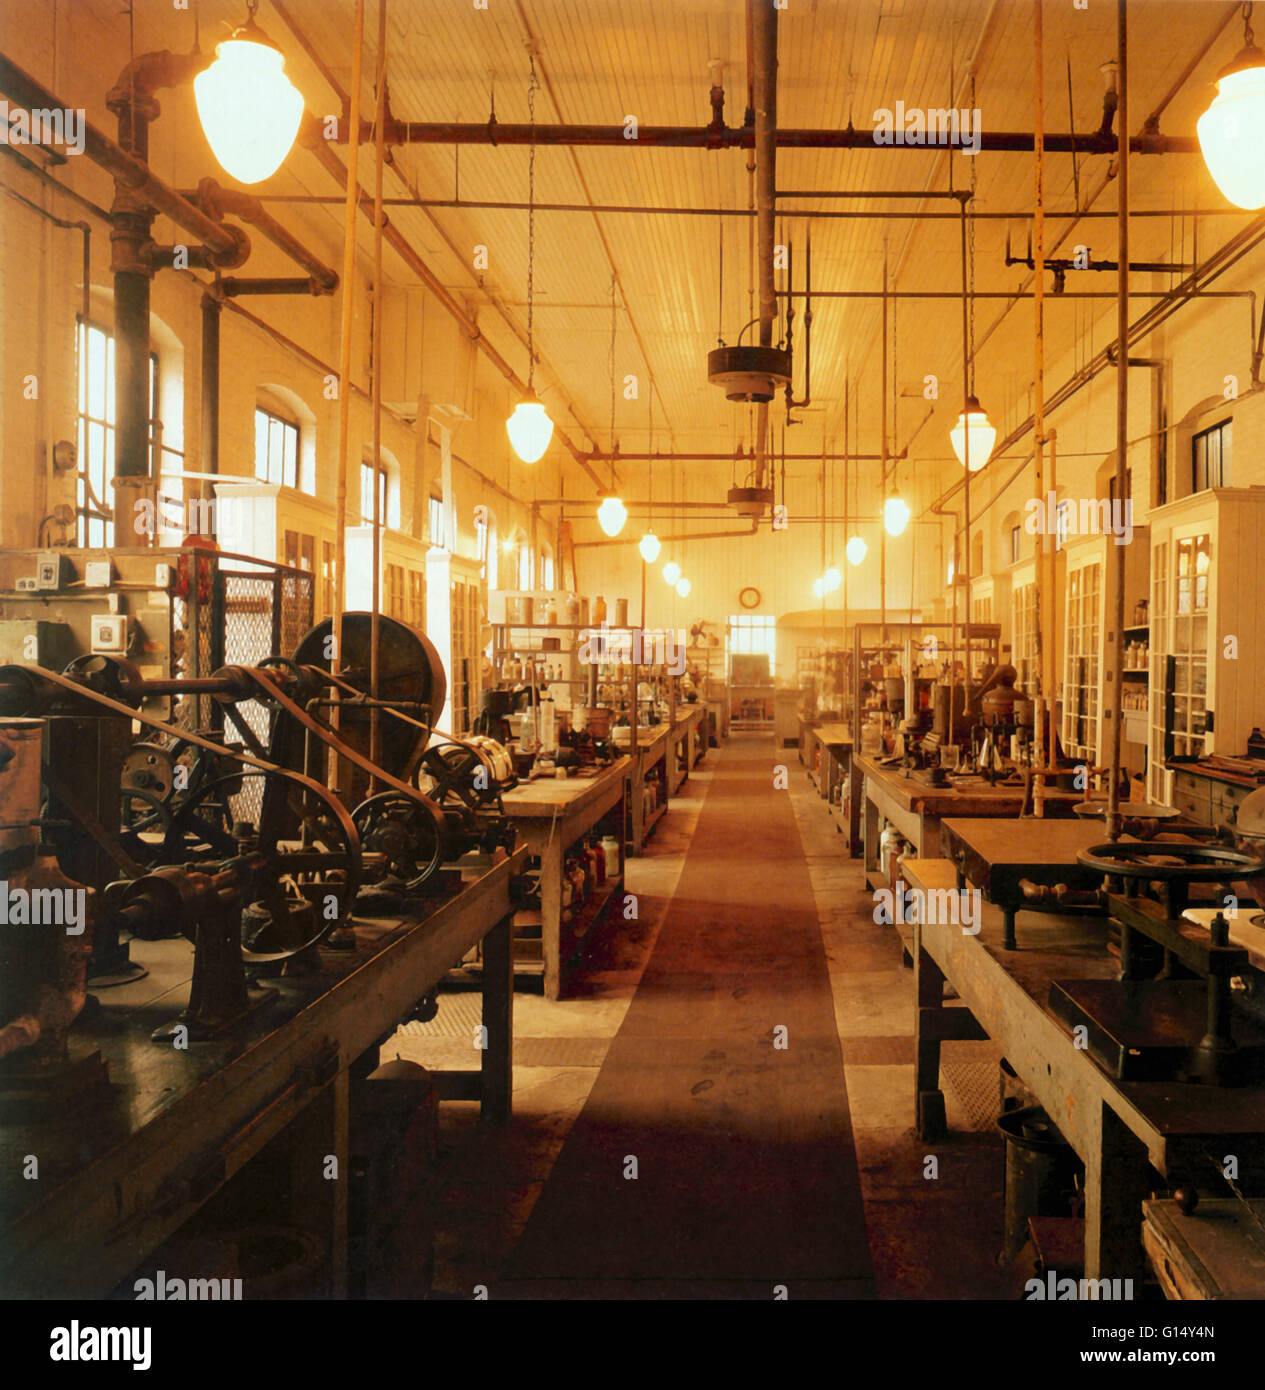 Le laboratoire de Thomas Edison à East Orange, New Jersey, USA. Thomas Alva Edison (1847-1931) était un inventeur américain, célèbre pour l'invention ou l'amélioration des dispositifs tels que le phonographe et l'ampoule électrique. Edison a été l'un des premiers inventeurs de bui Banque D'Images